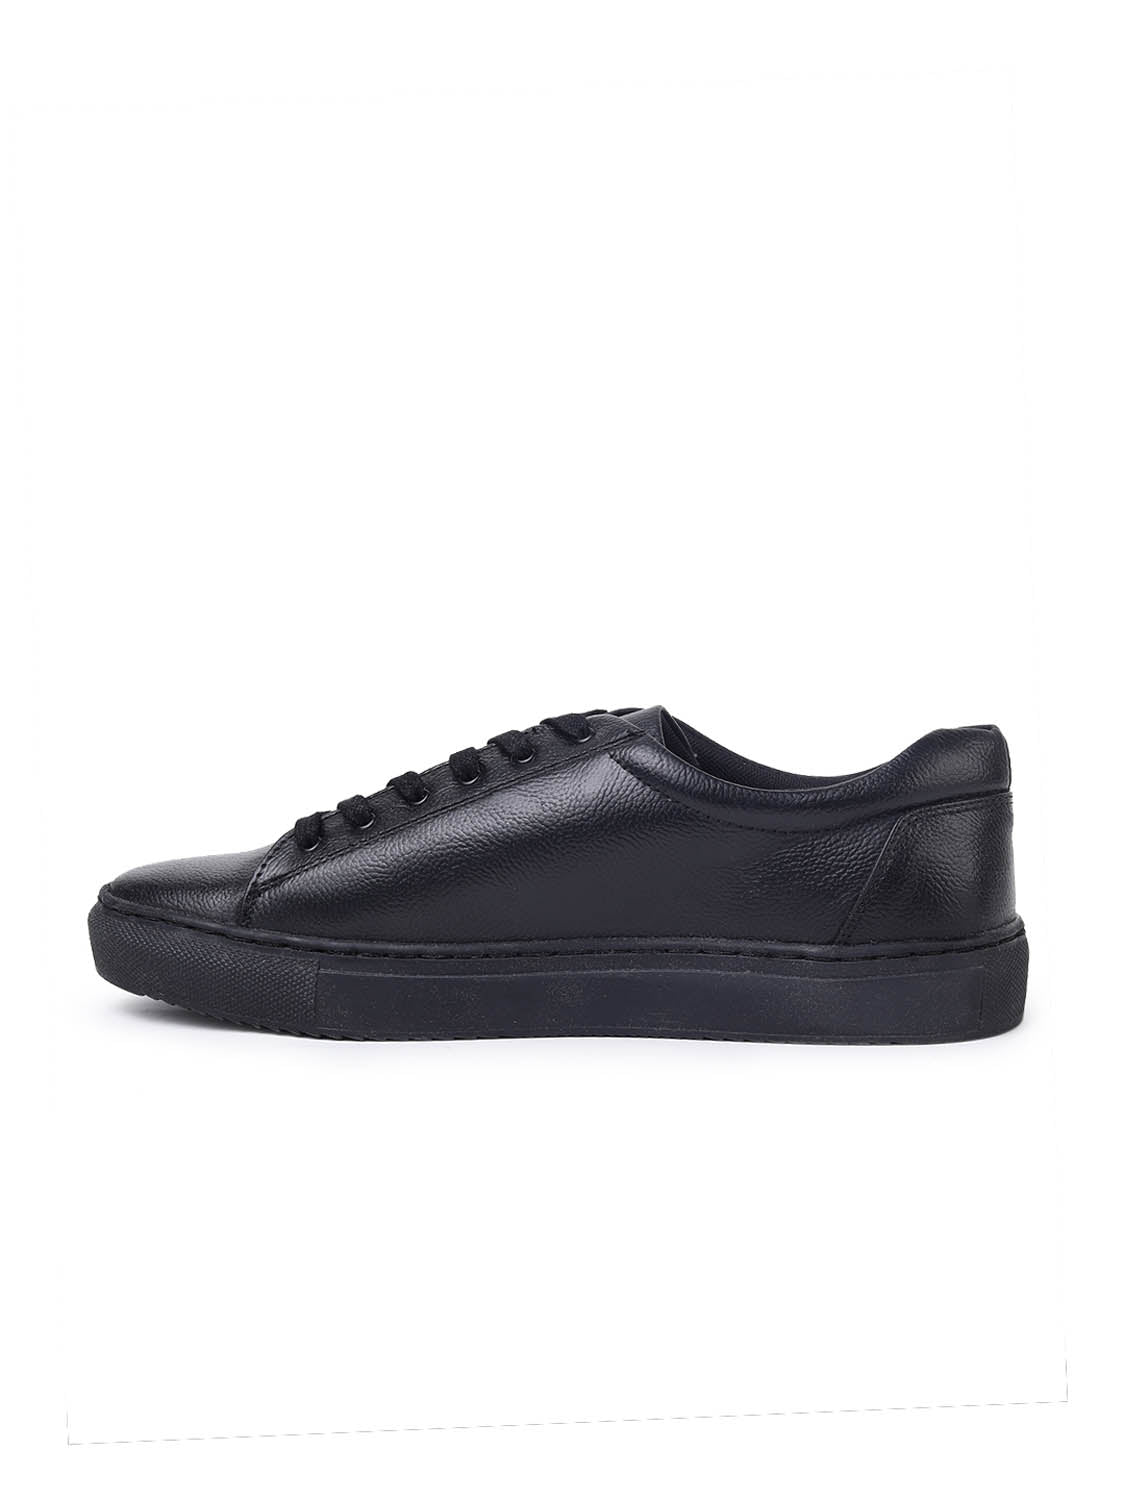 Eeken Sneakers For Men (Black)